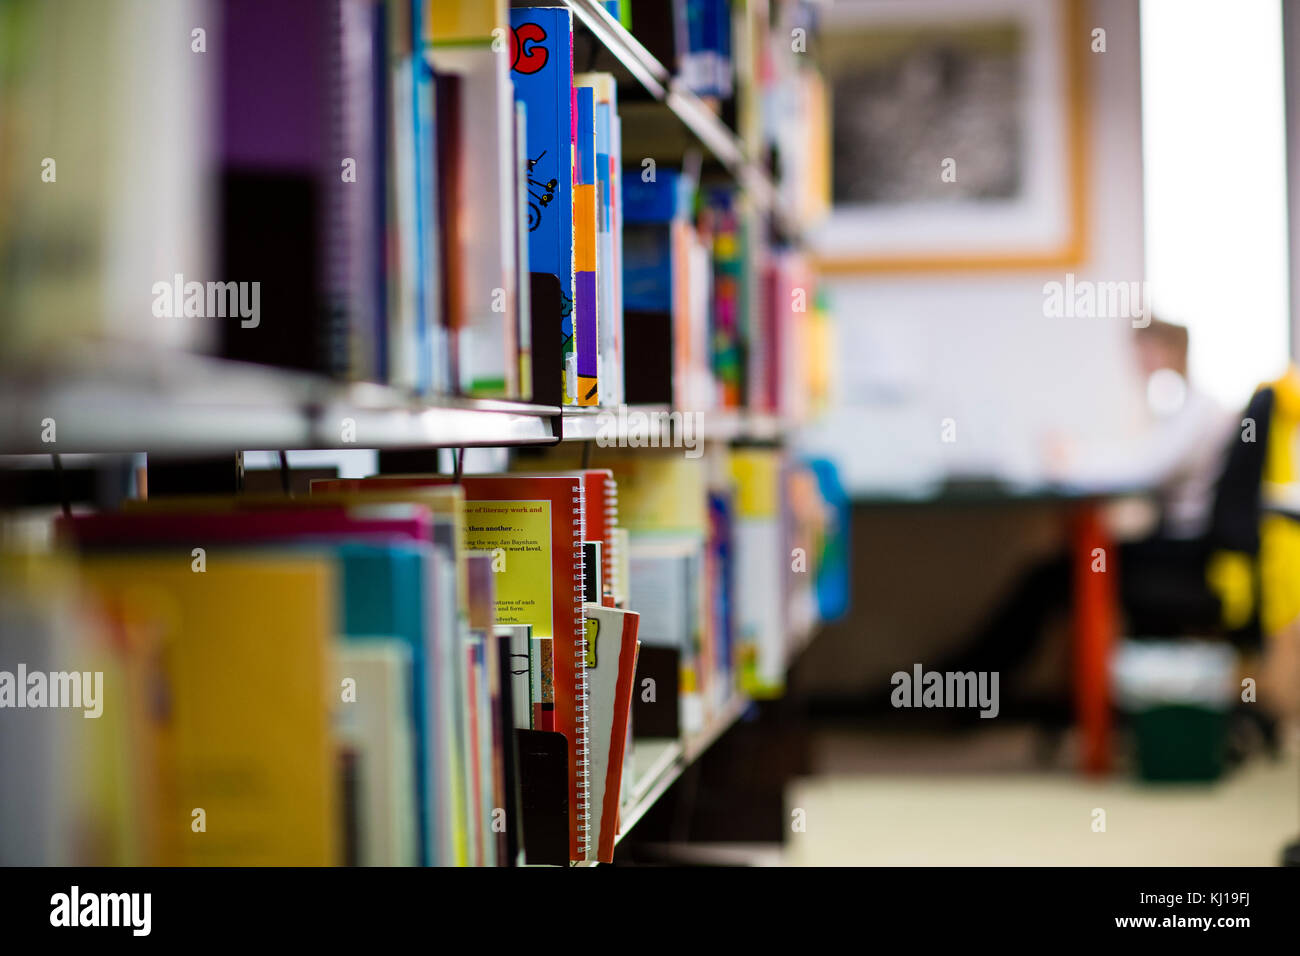 L'enseignement supérieur au Royaume-Uni : livres universitaires sur les étagères dans une bibliothèque de l'University College, UK (selective focus) Banque D'Images